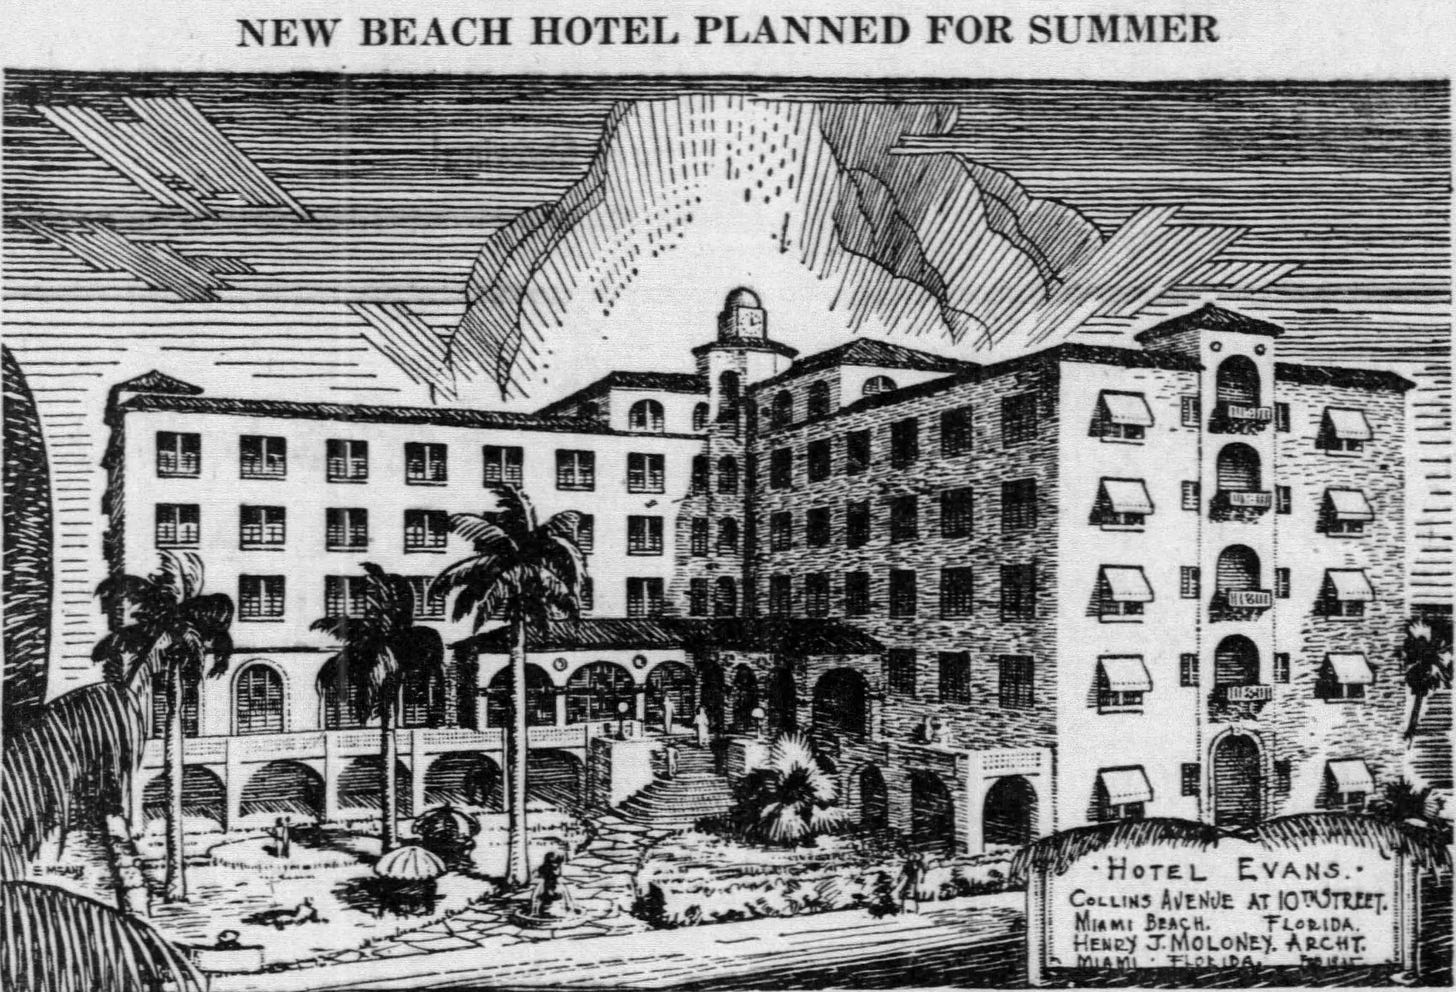 Figure 2: Hotel Evans Rendering in 1935